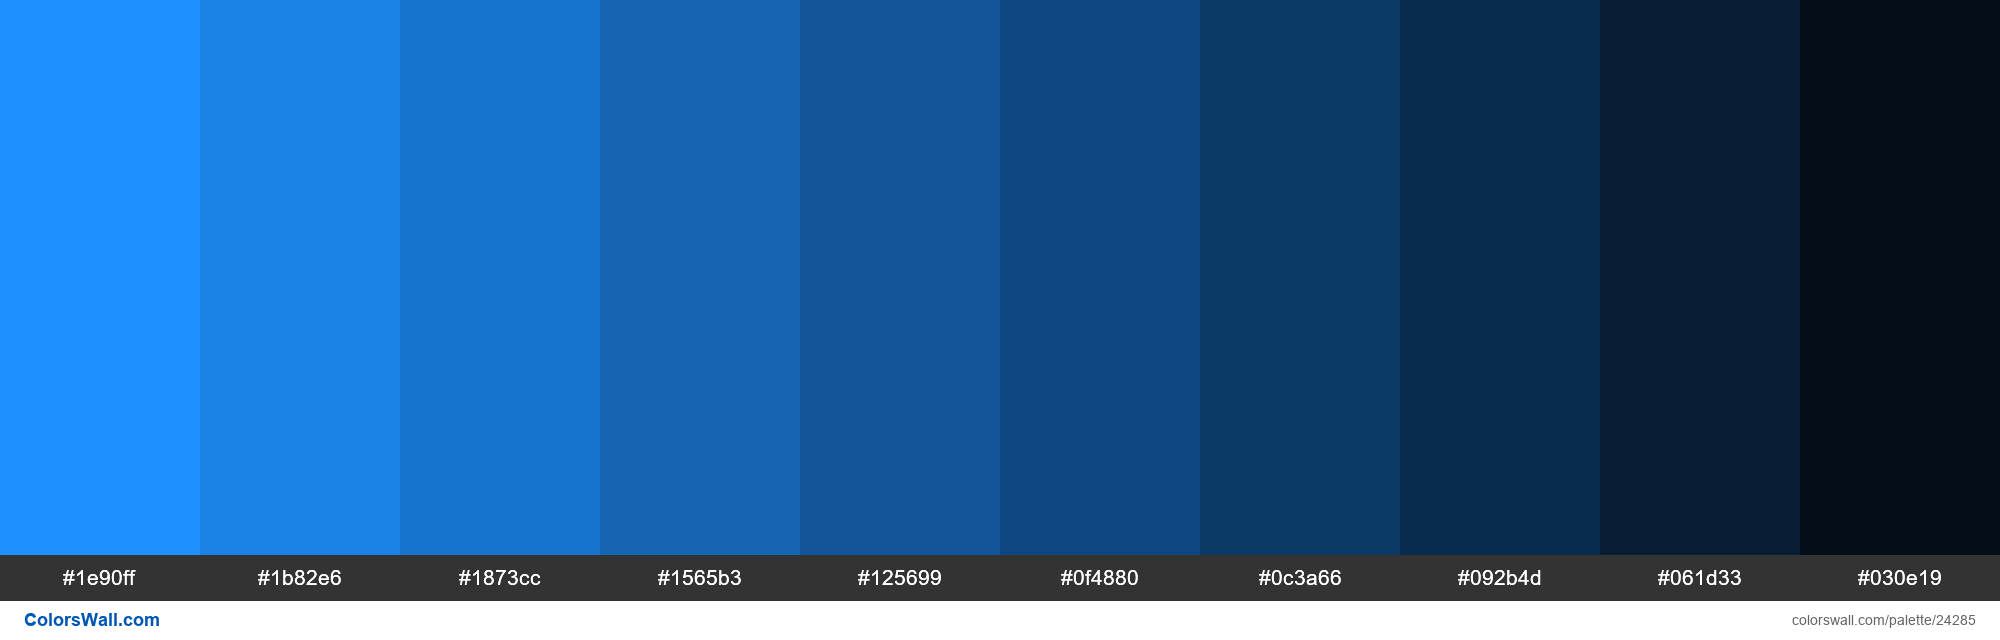 About Dodger blue - Color codes, similar colors and paints 